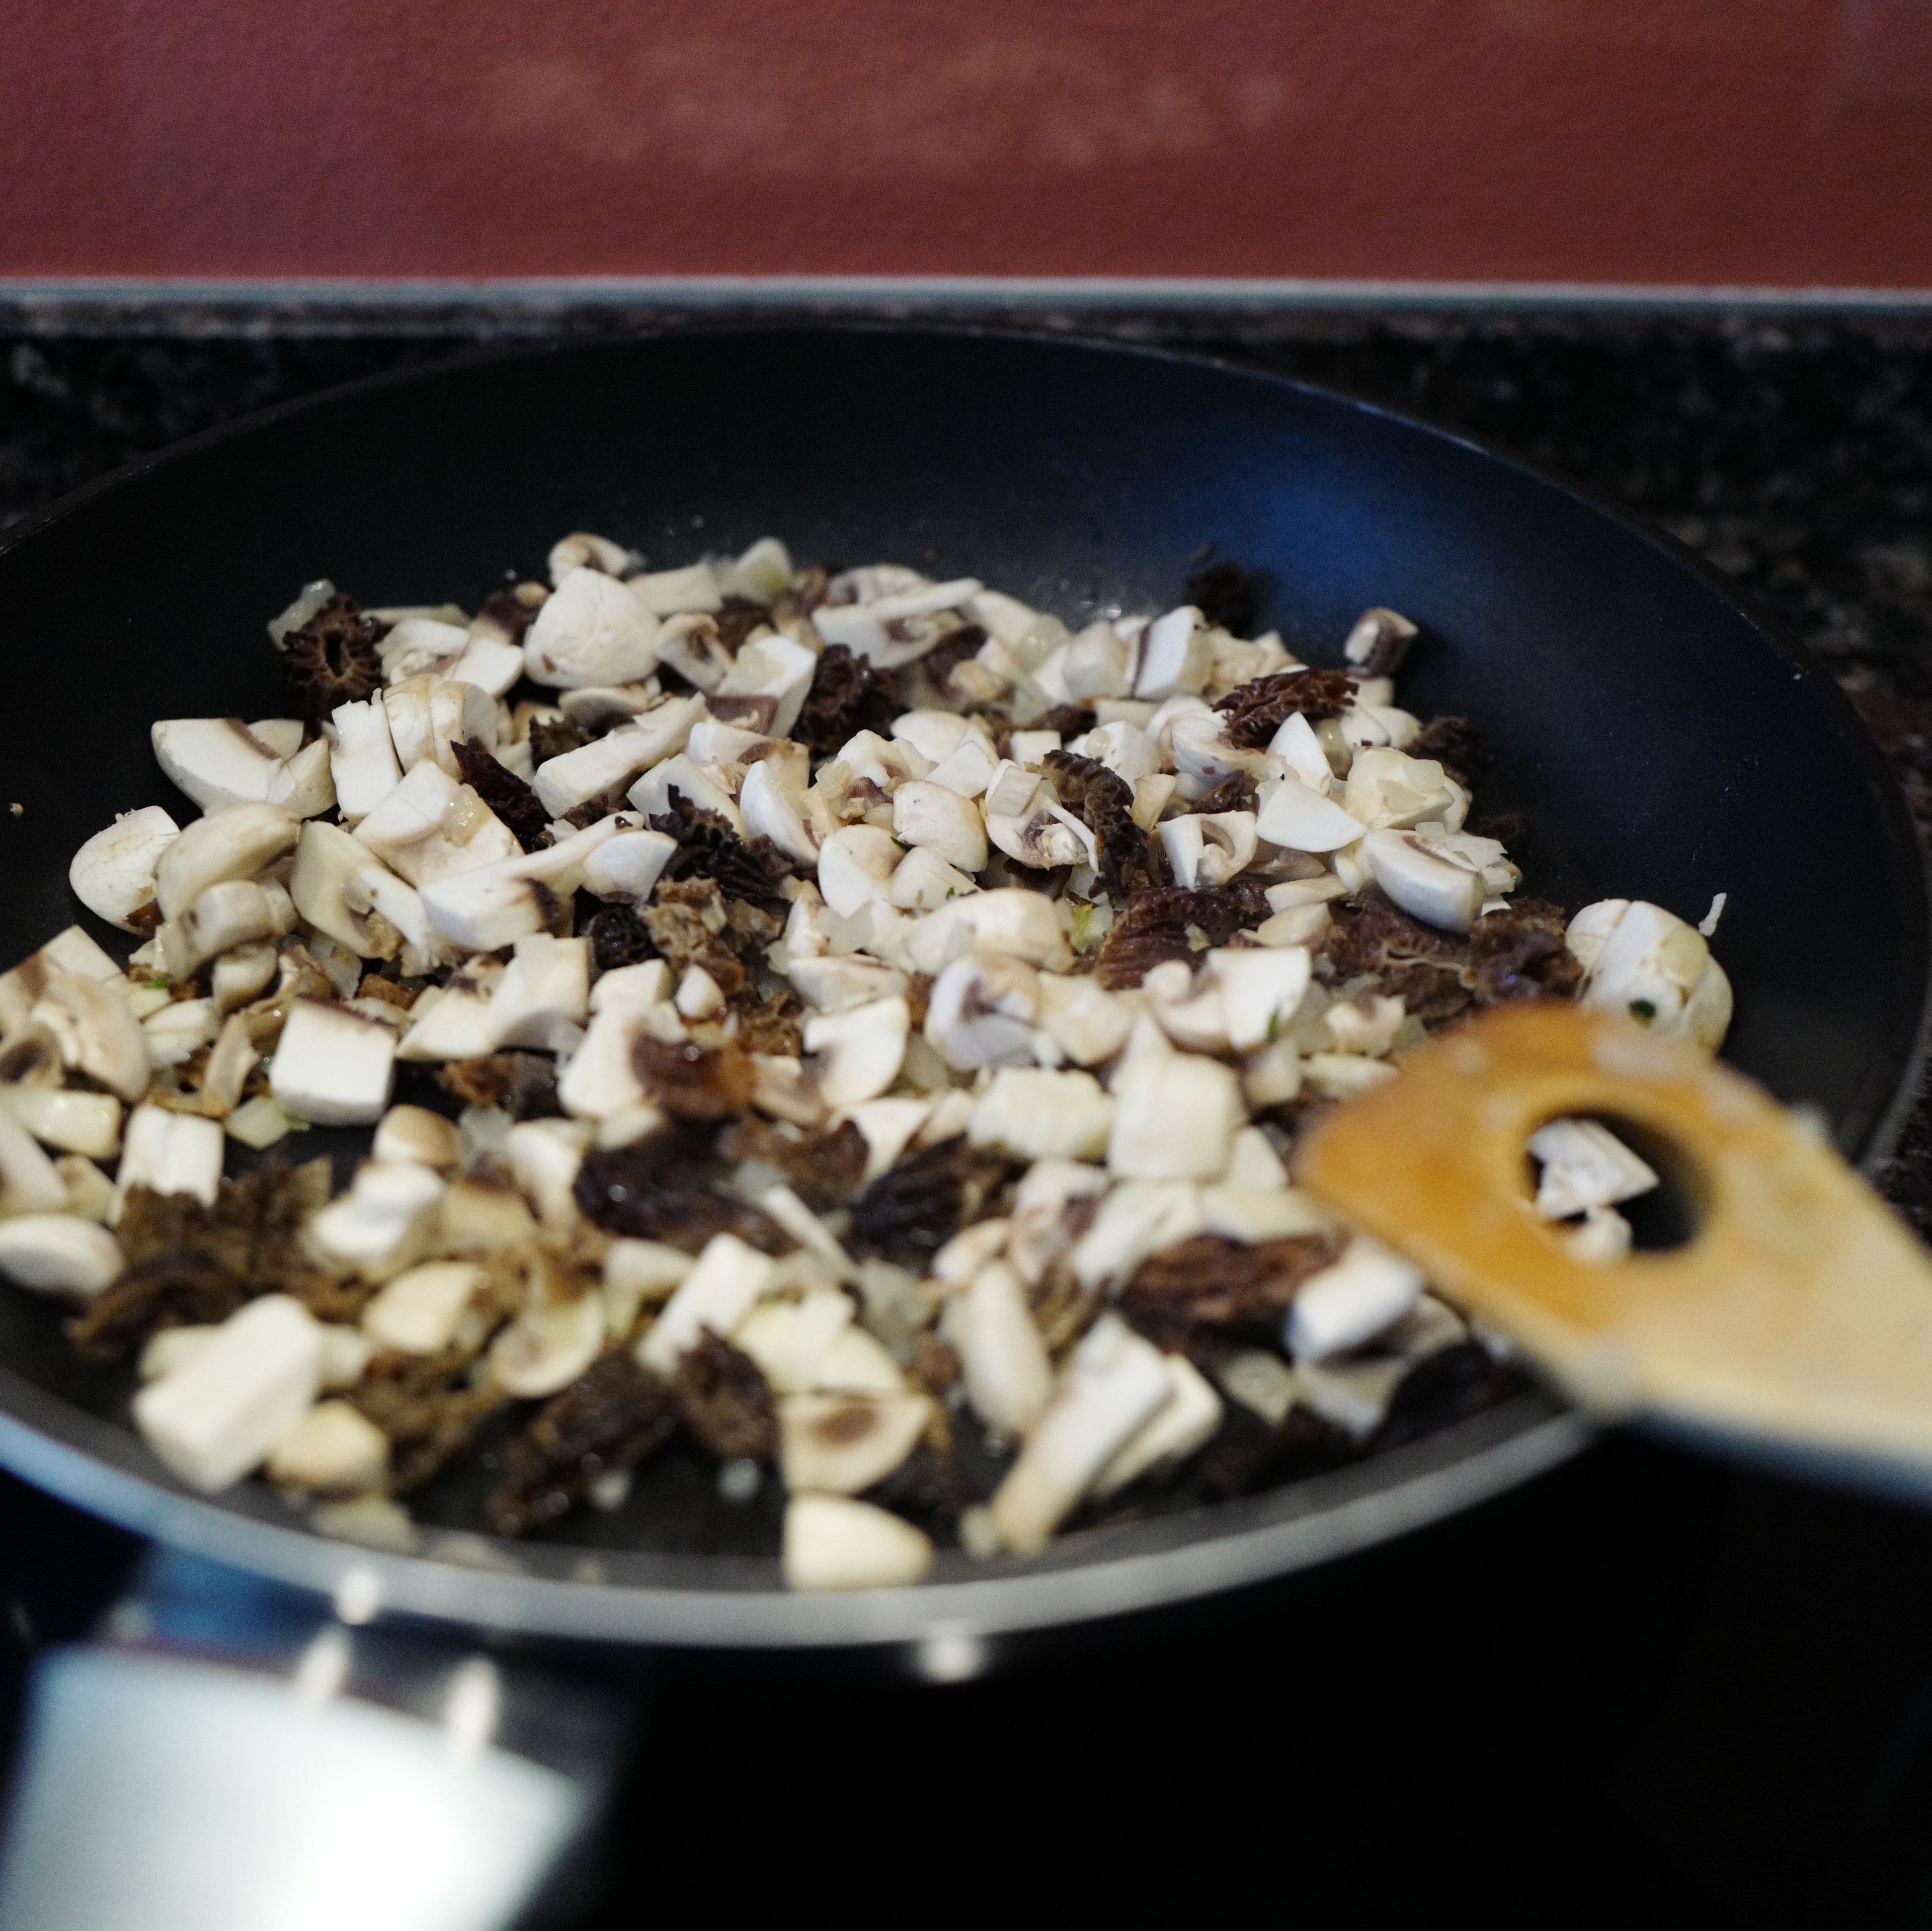 Ein wenig Öl in eine beschichtete Pfanne geben und die Zwiebel darin glasig dünsten. Die gehackten Pilze und den Knoblauch dazu geben und ca. 5-6 min braten.